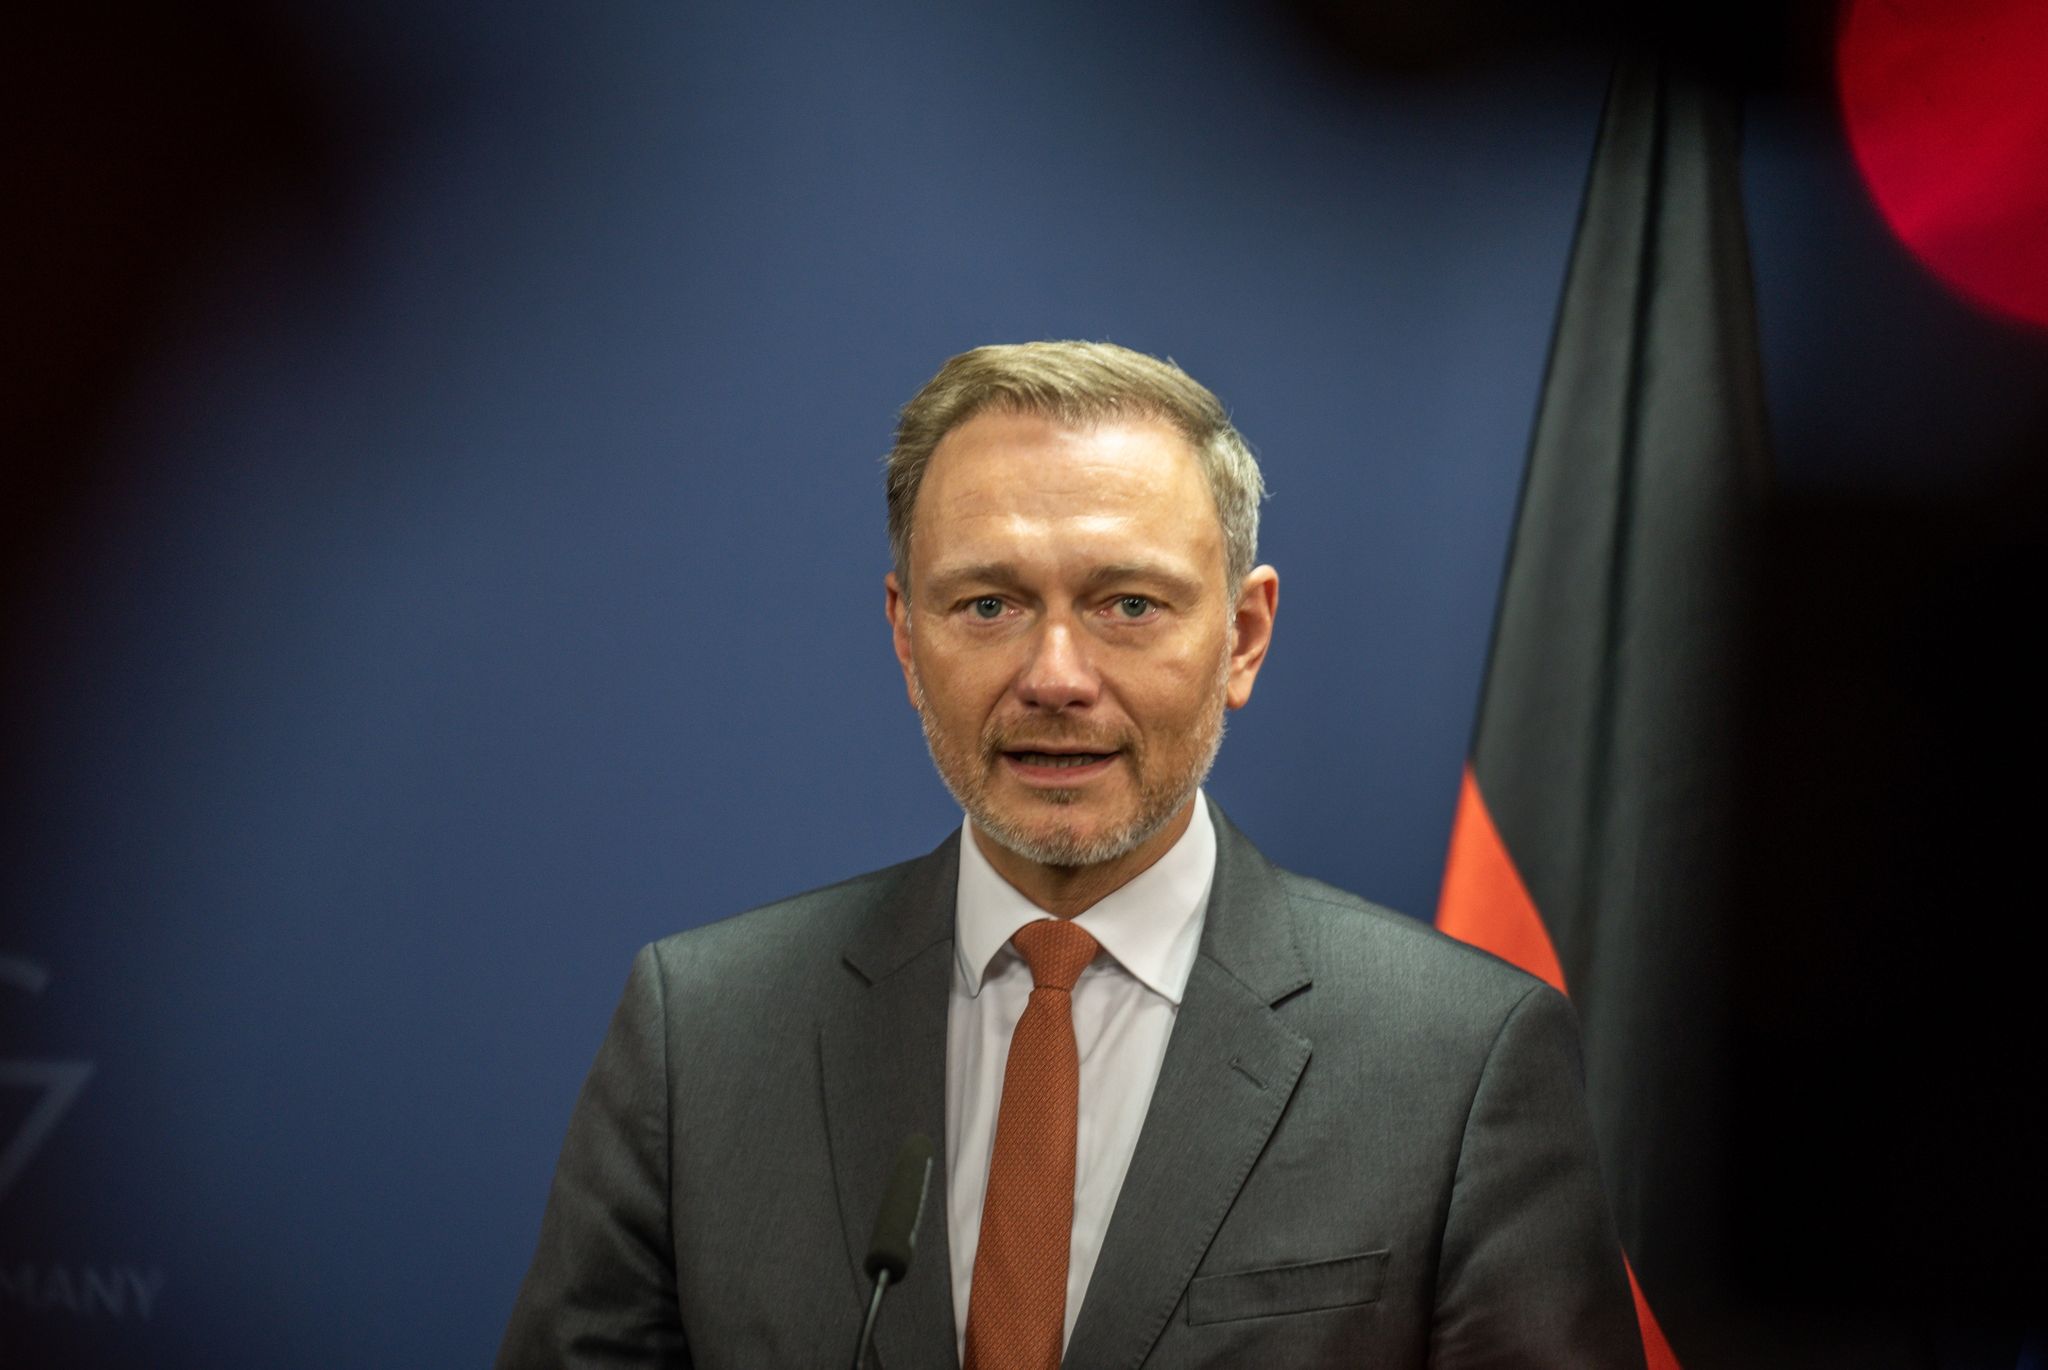 FDP-Chef Christian Lindner spricht in seinem neuen Podcast mit dem früheren Bundespräsidenten Joachim Gauck.